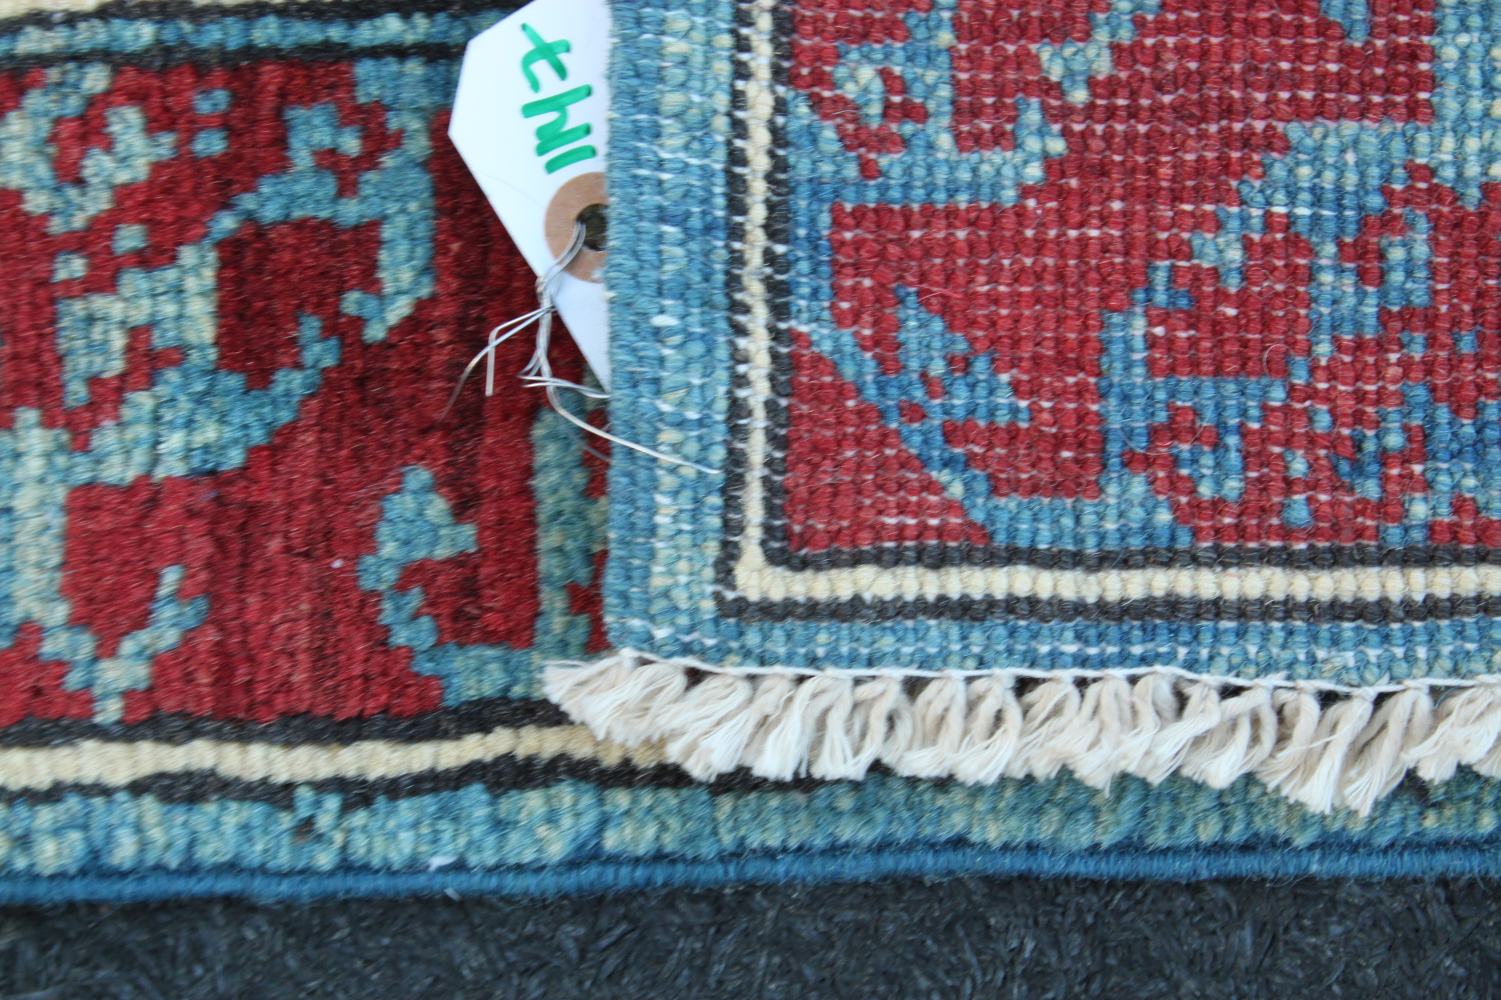 For sale: Afghan War Rug or Conflict Carpet